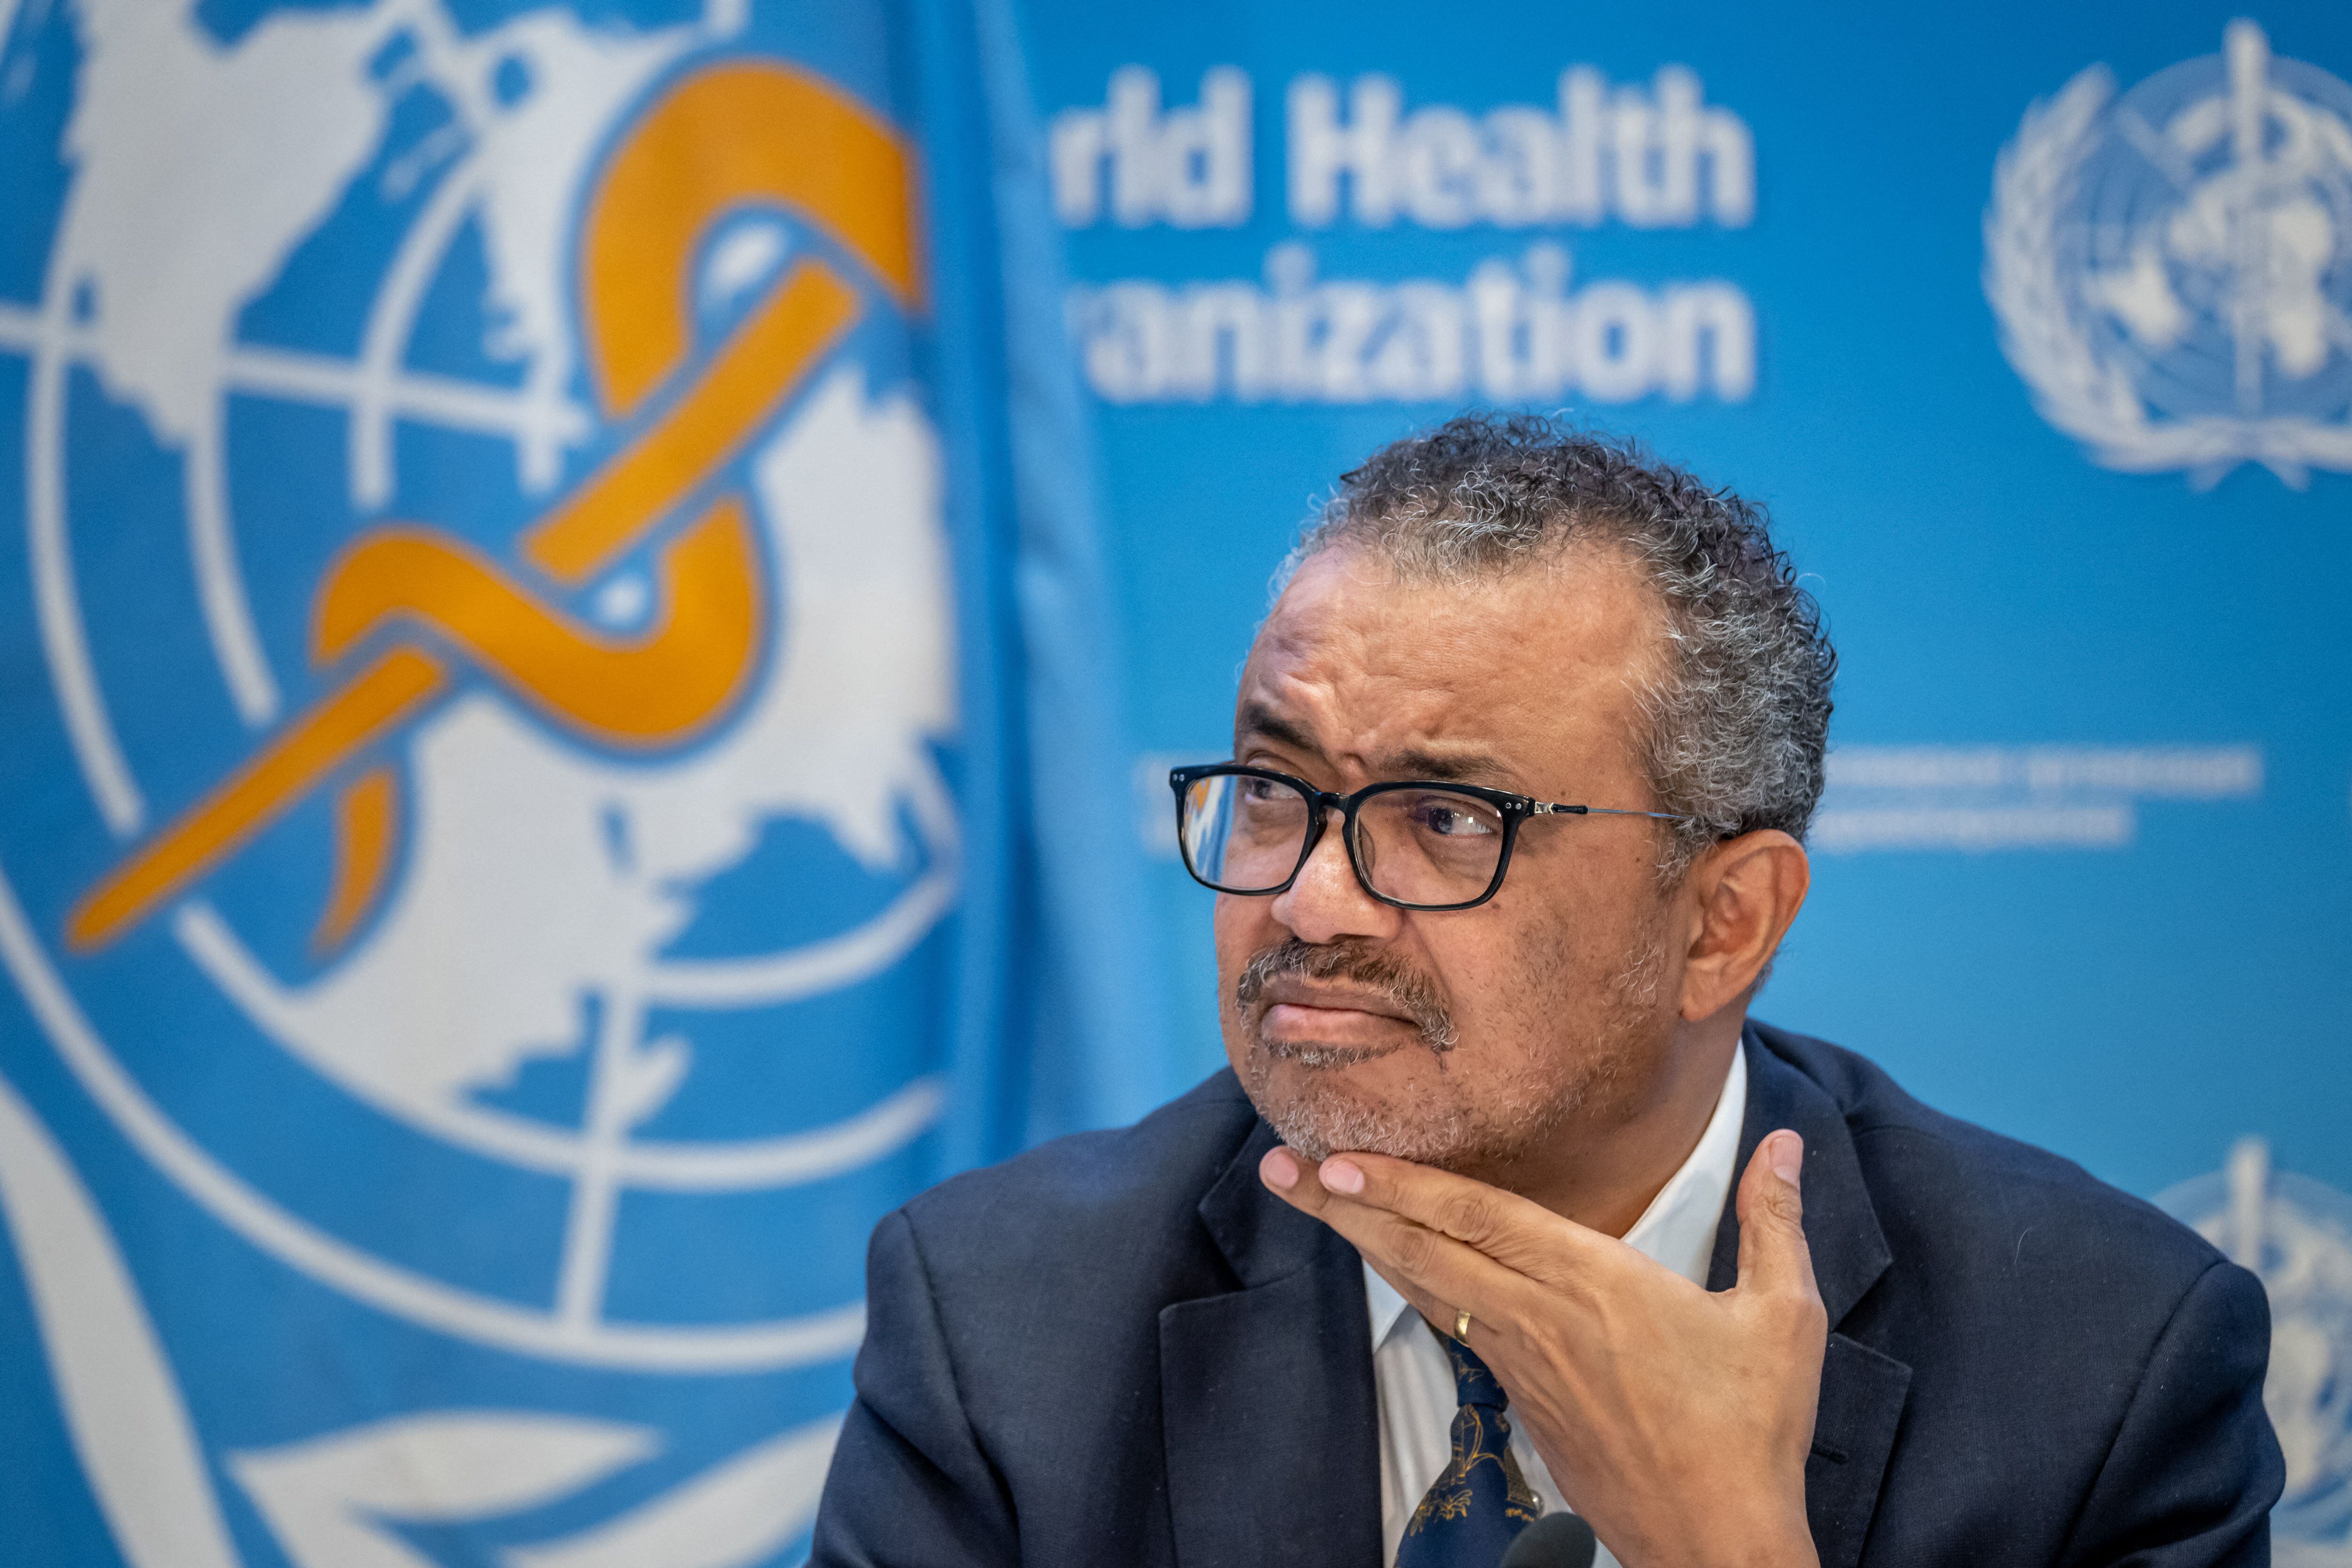 El director general de la OMS, Tedros Adhanom Ghebreyesus, gesticula durante una conferencia de prensa en la sede de la Organización Mundial de la Salud en Ginebra, el 14 de diciembre de 2022.